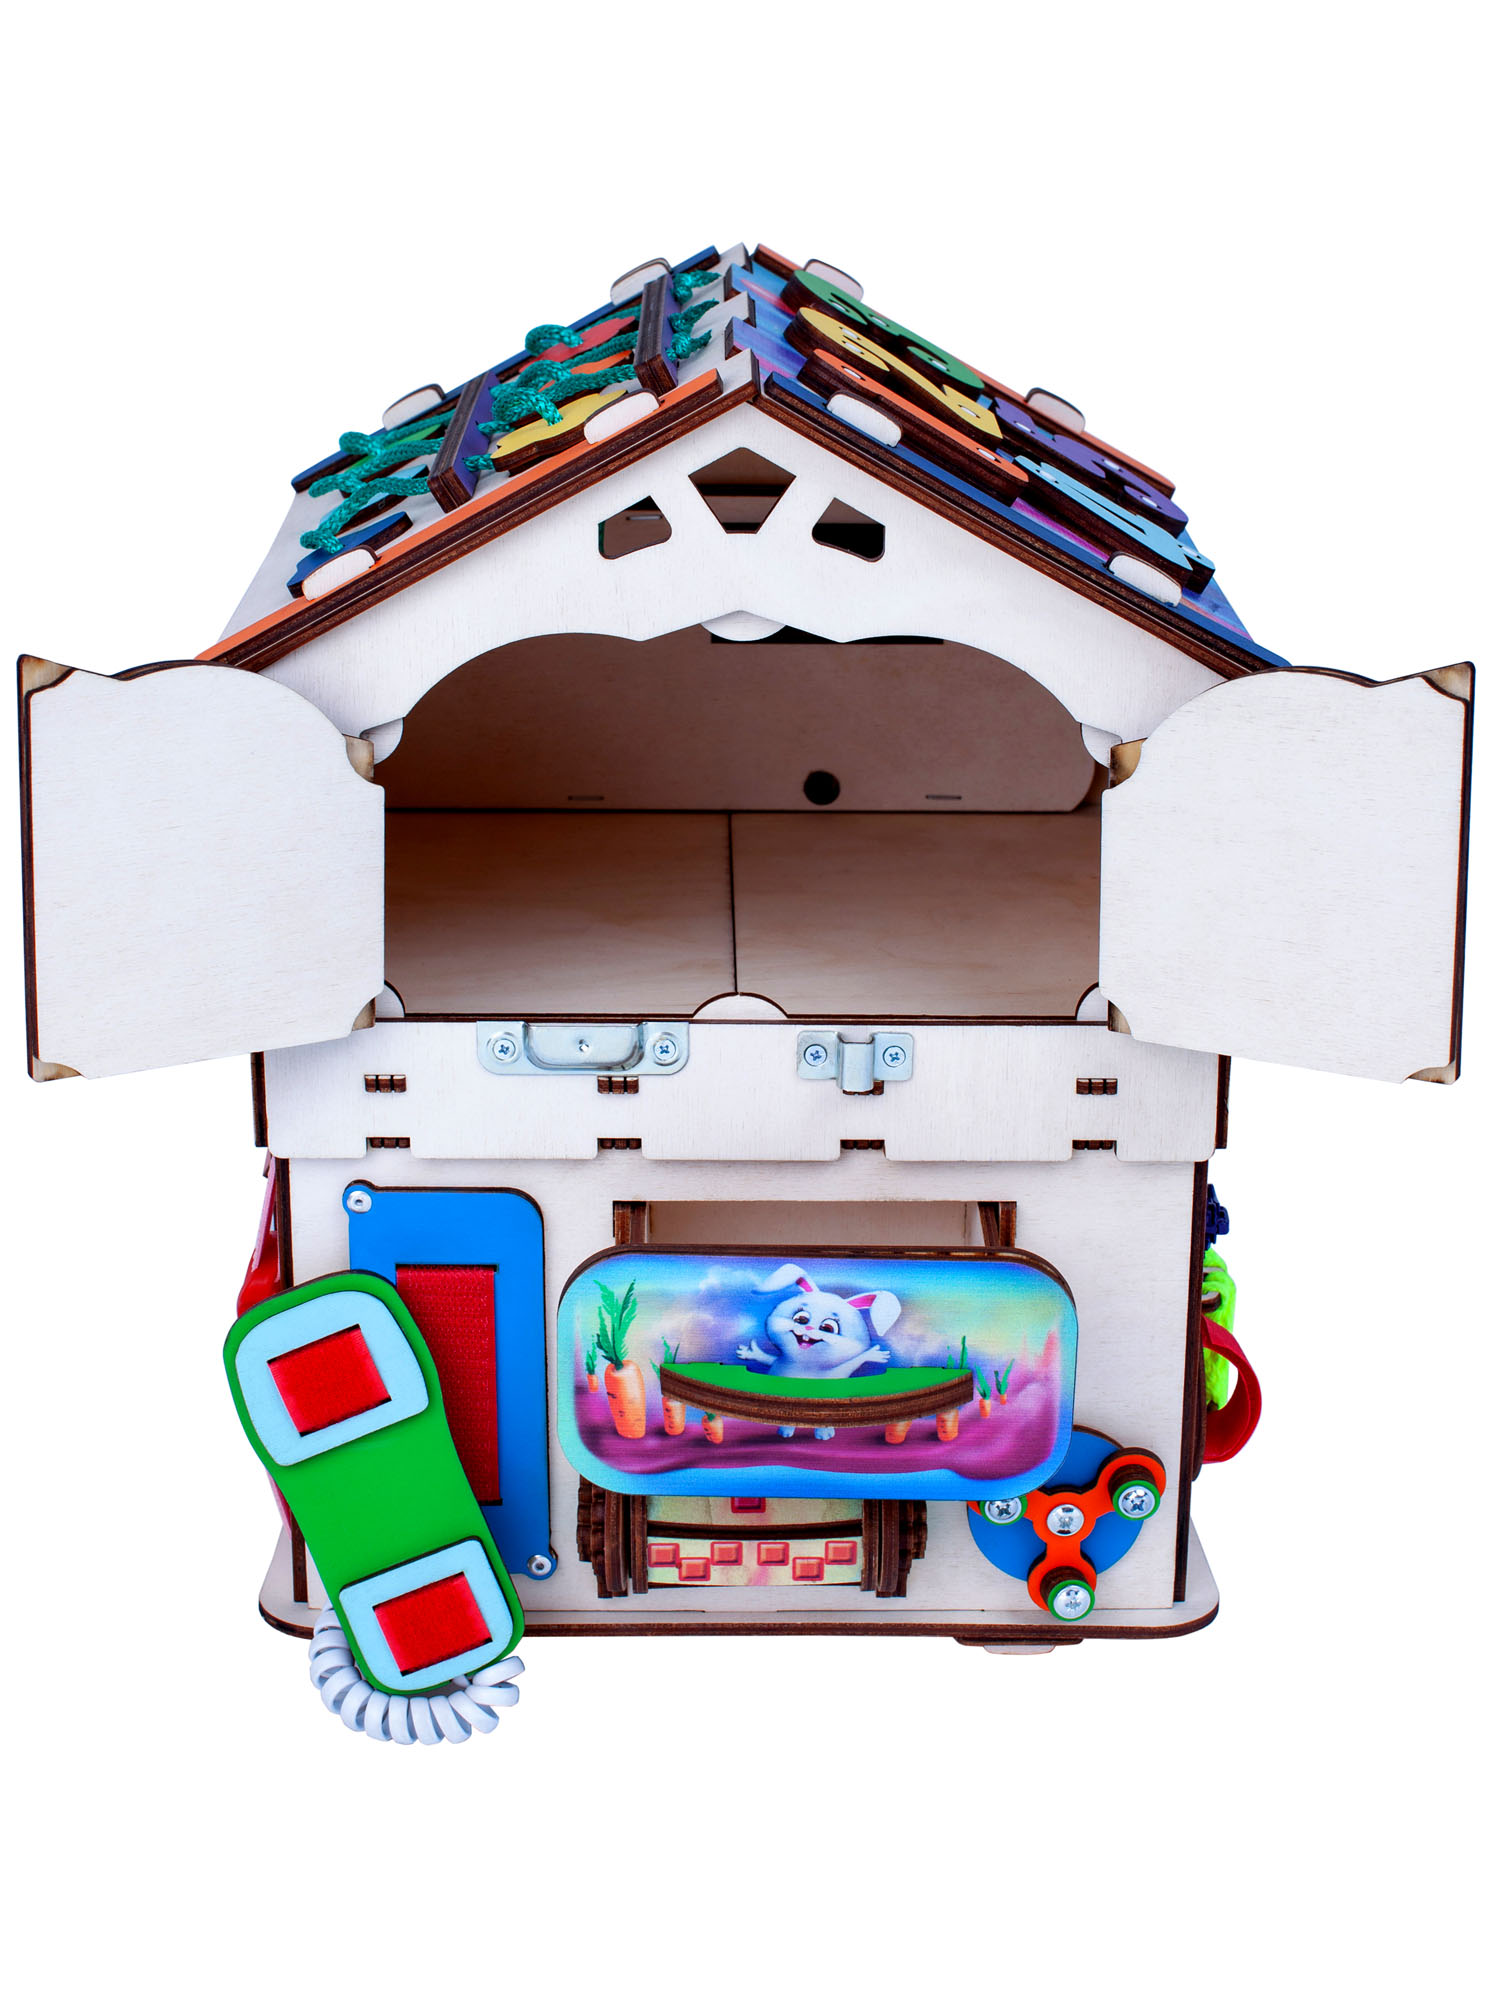 Бизиборд Jolly Kids развивающий бизидом и куб 2 в 1 со светом - фото 9